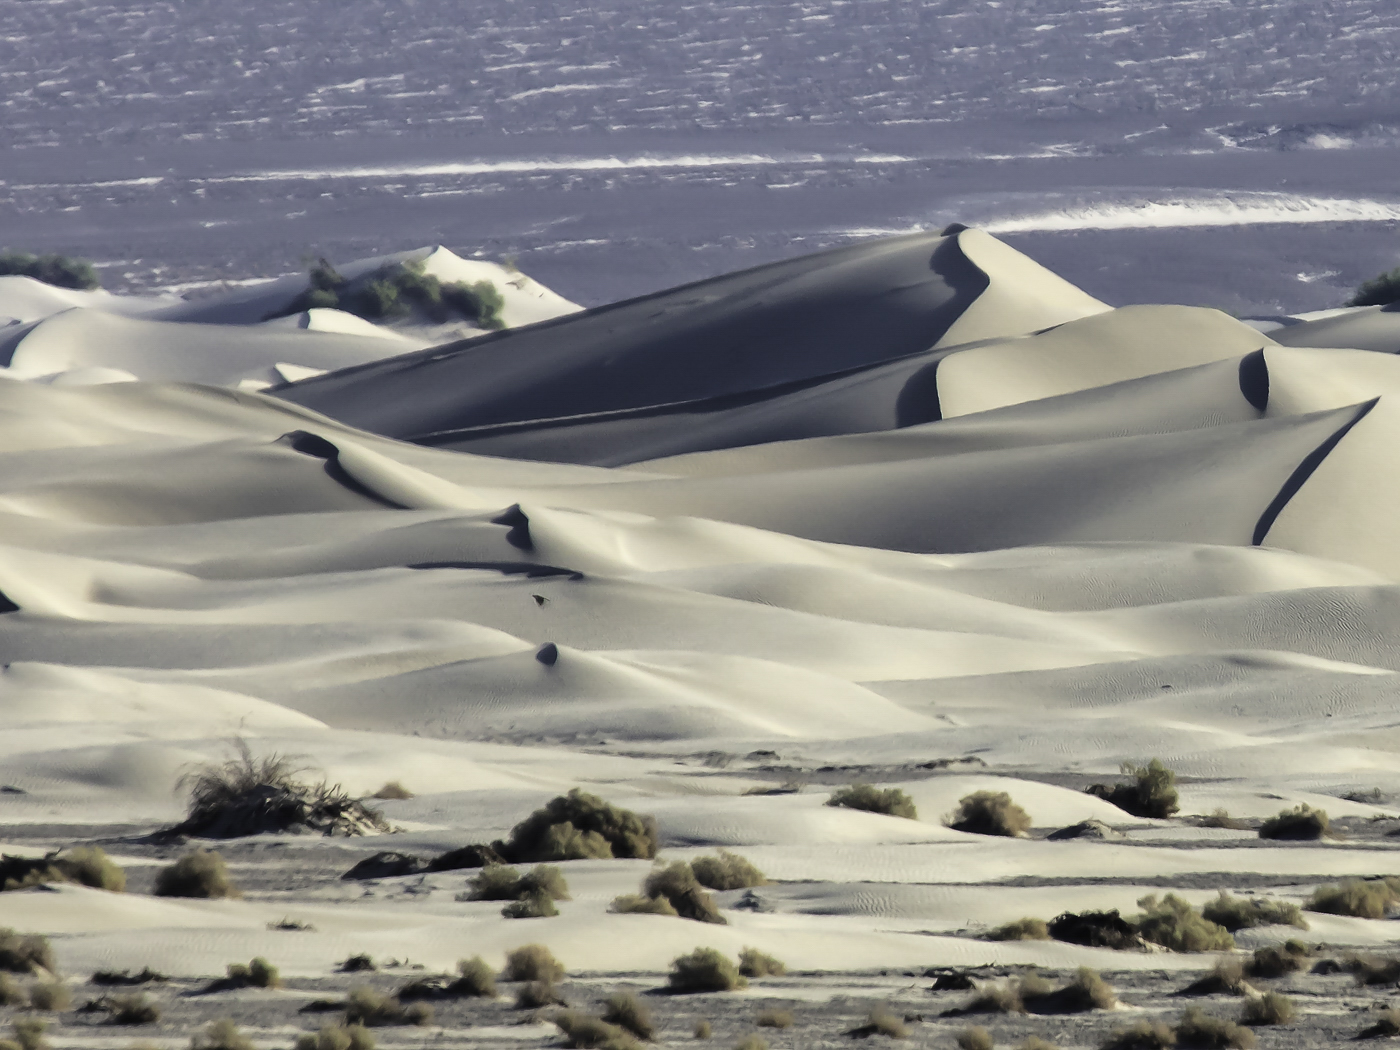 Mesquite Flat Sand Dune by Walter Naumann